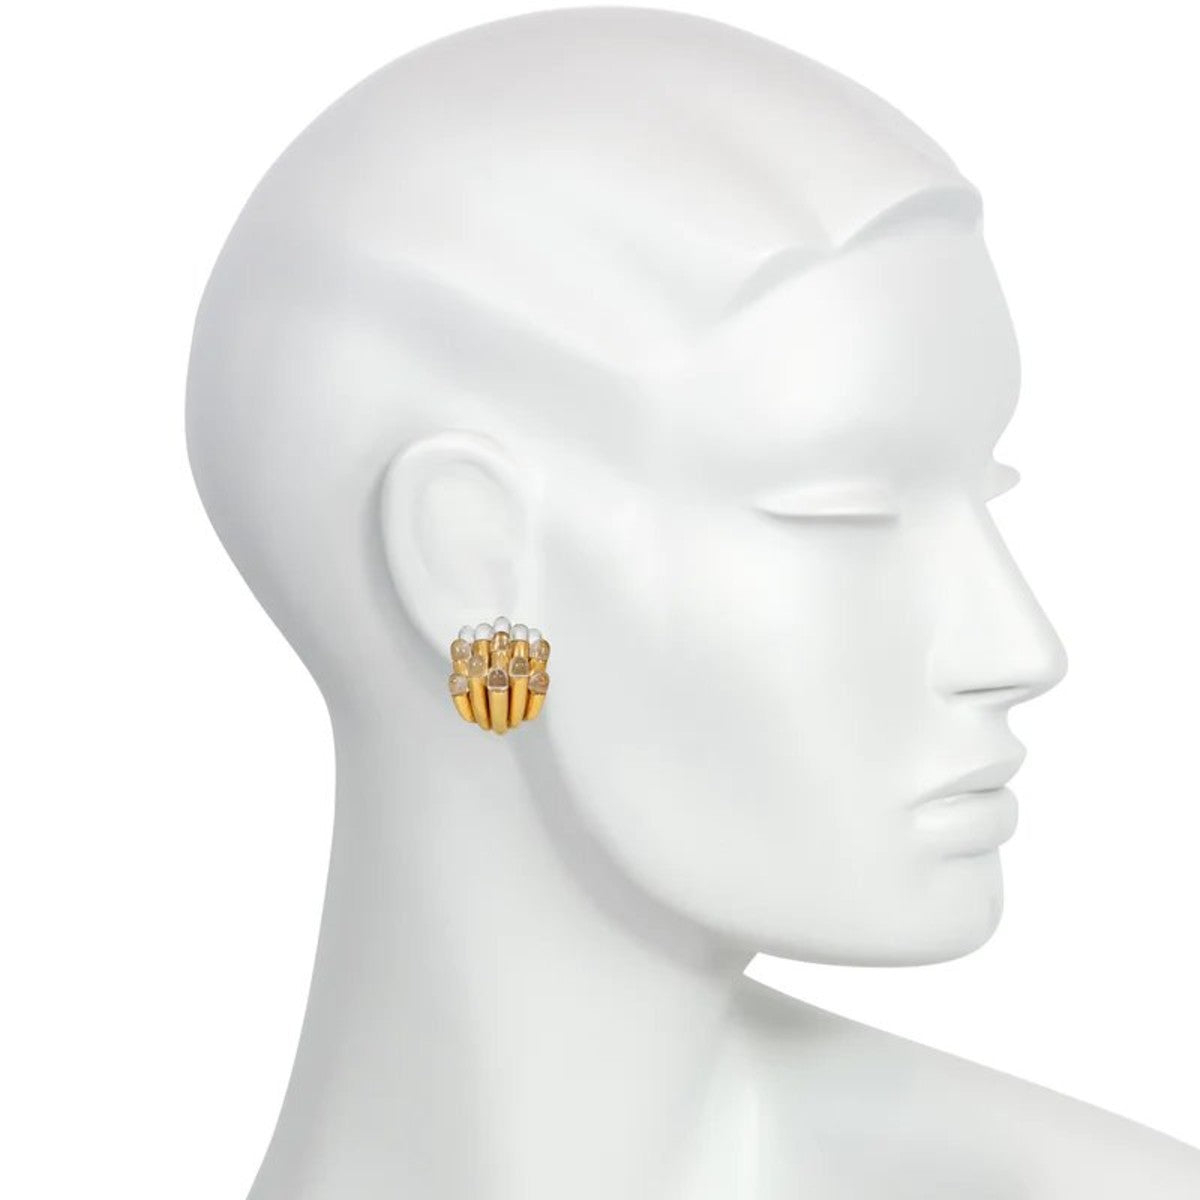 Aldo Cipullo 1970s 18KT Yellow Gold Rock Crystal Sea Anemones Earrings on ear